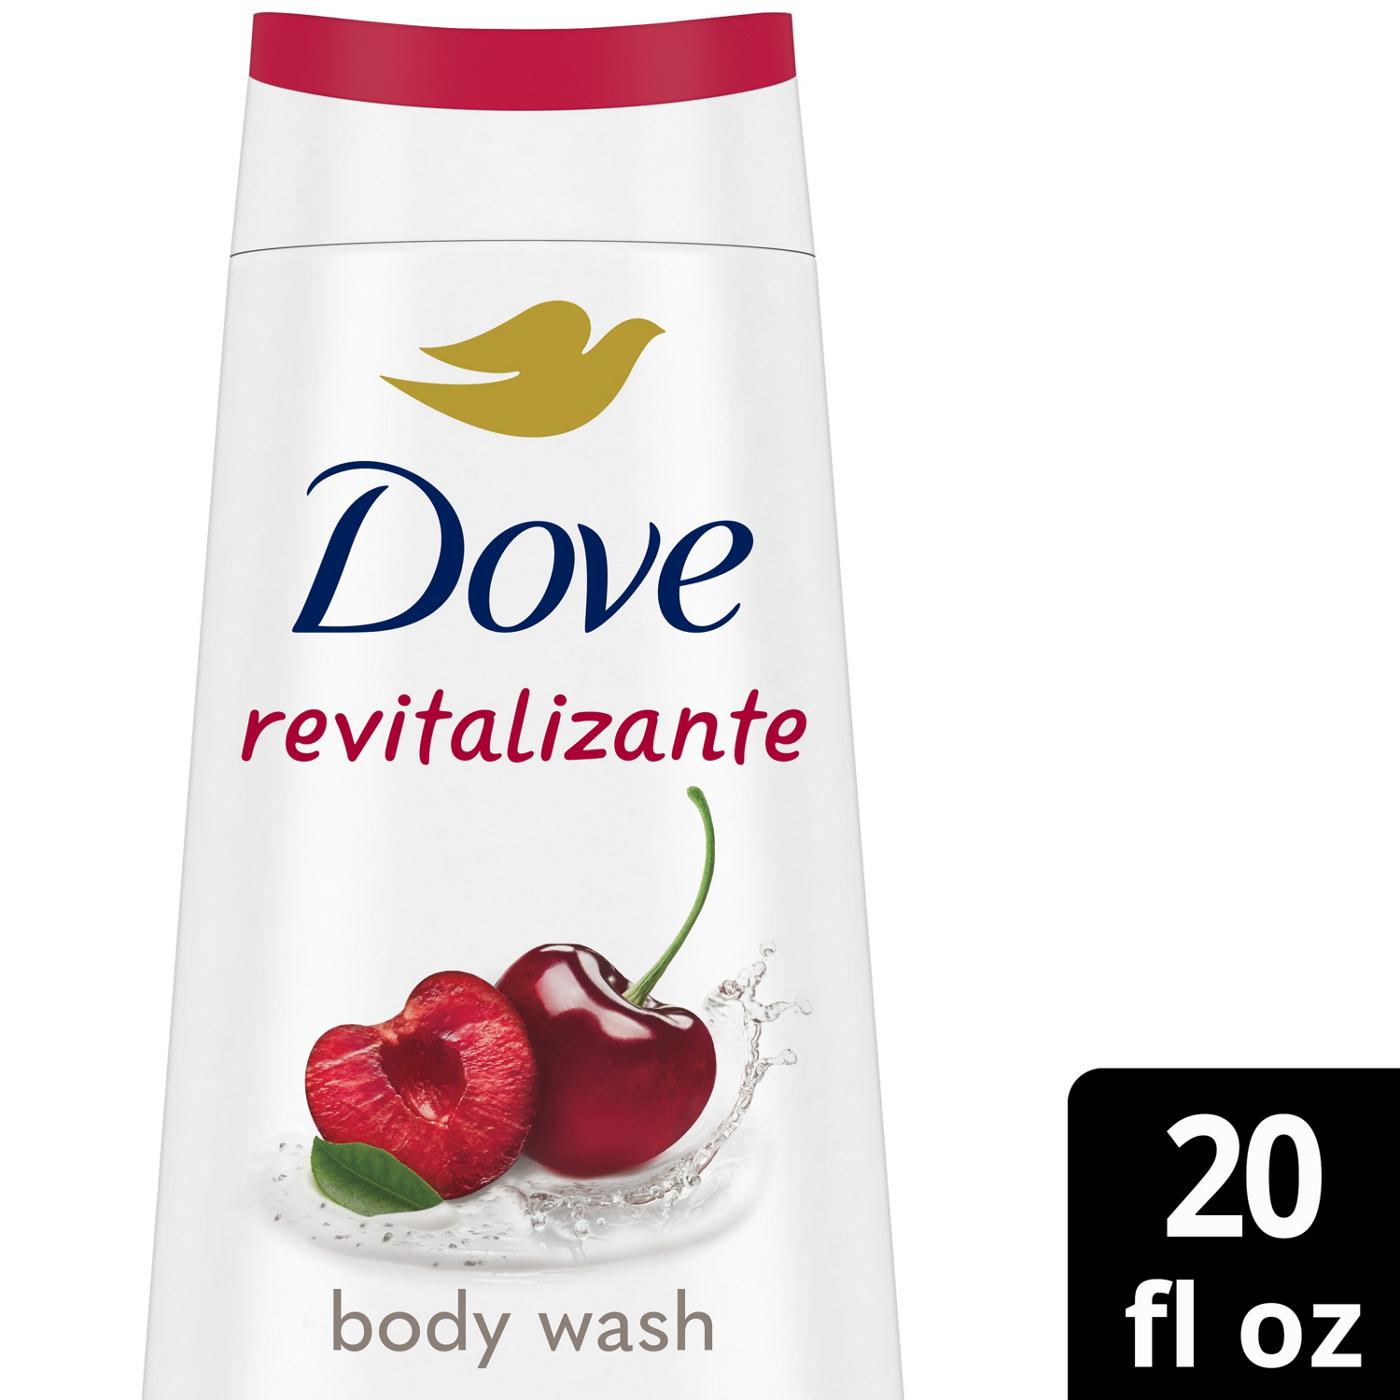 Dove Revitalizante Body Wash - Cherry & Chia Milk; image 7 of 7